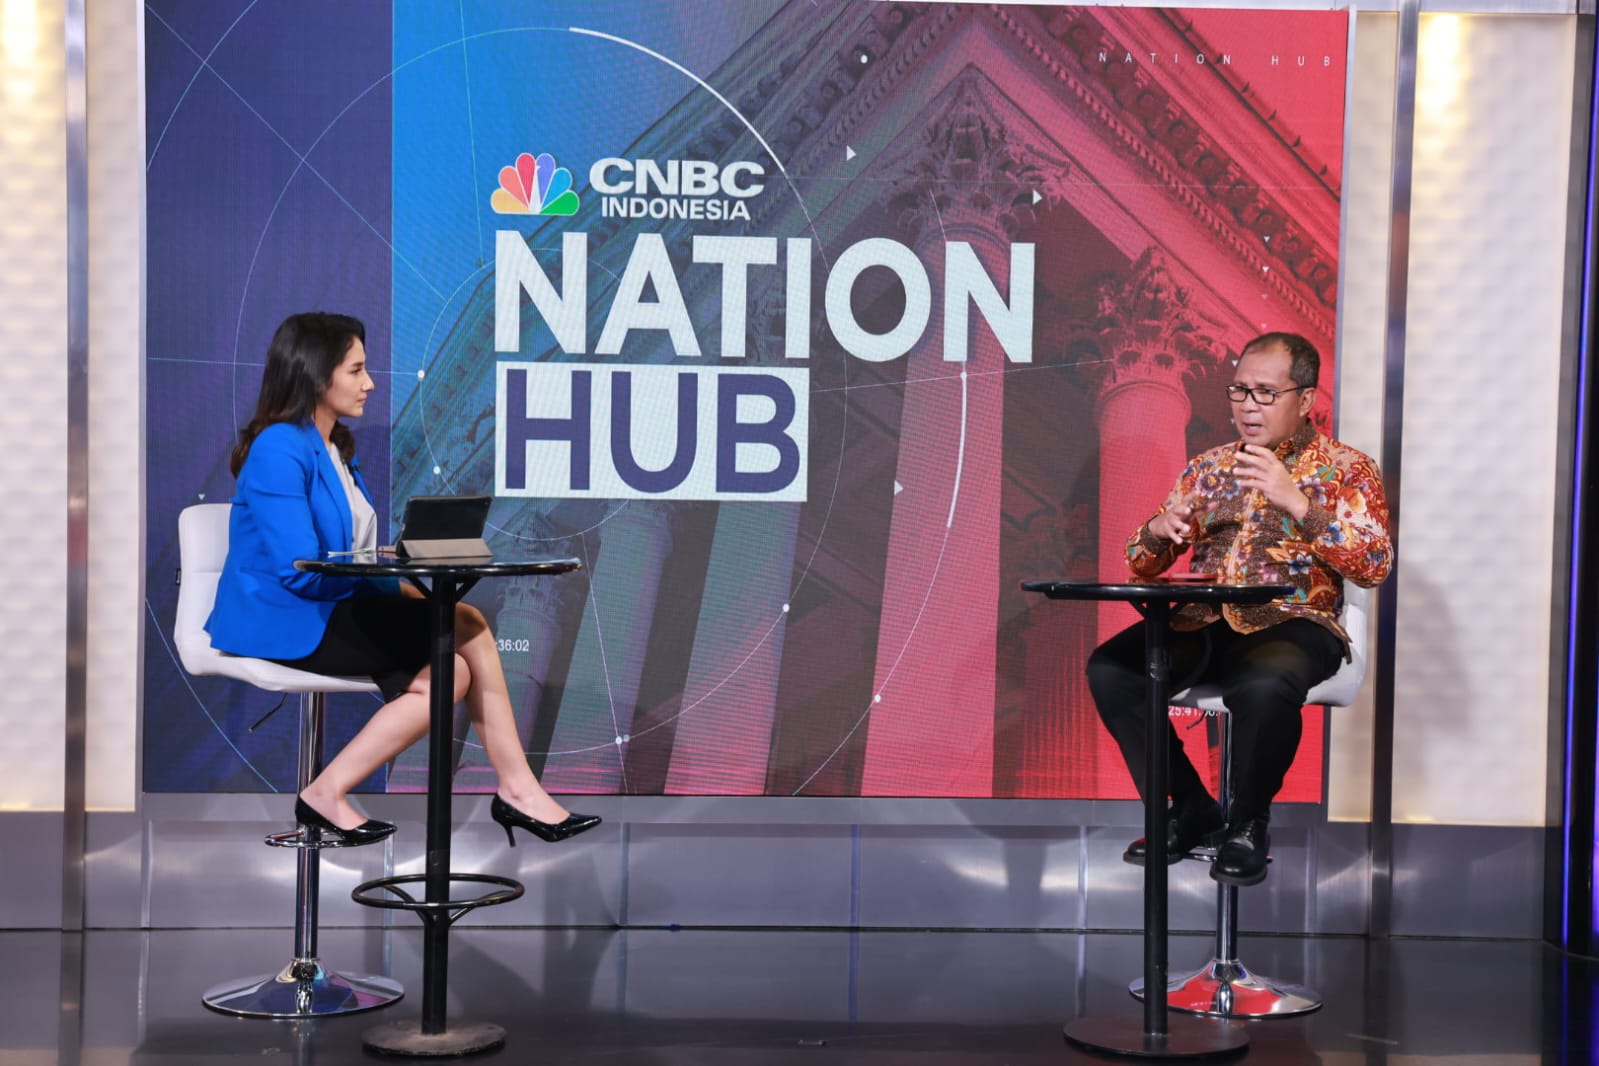 Wali Kota Makassar, Moh Ramdhan Pomanto dalam program Nation Hub CNBC di Jakarta mempresentasikan strategi Kota Makassar mencapai pertumbuhan ekonomi tumbuh pesat, Rabu (25/10).